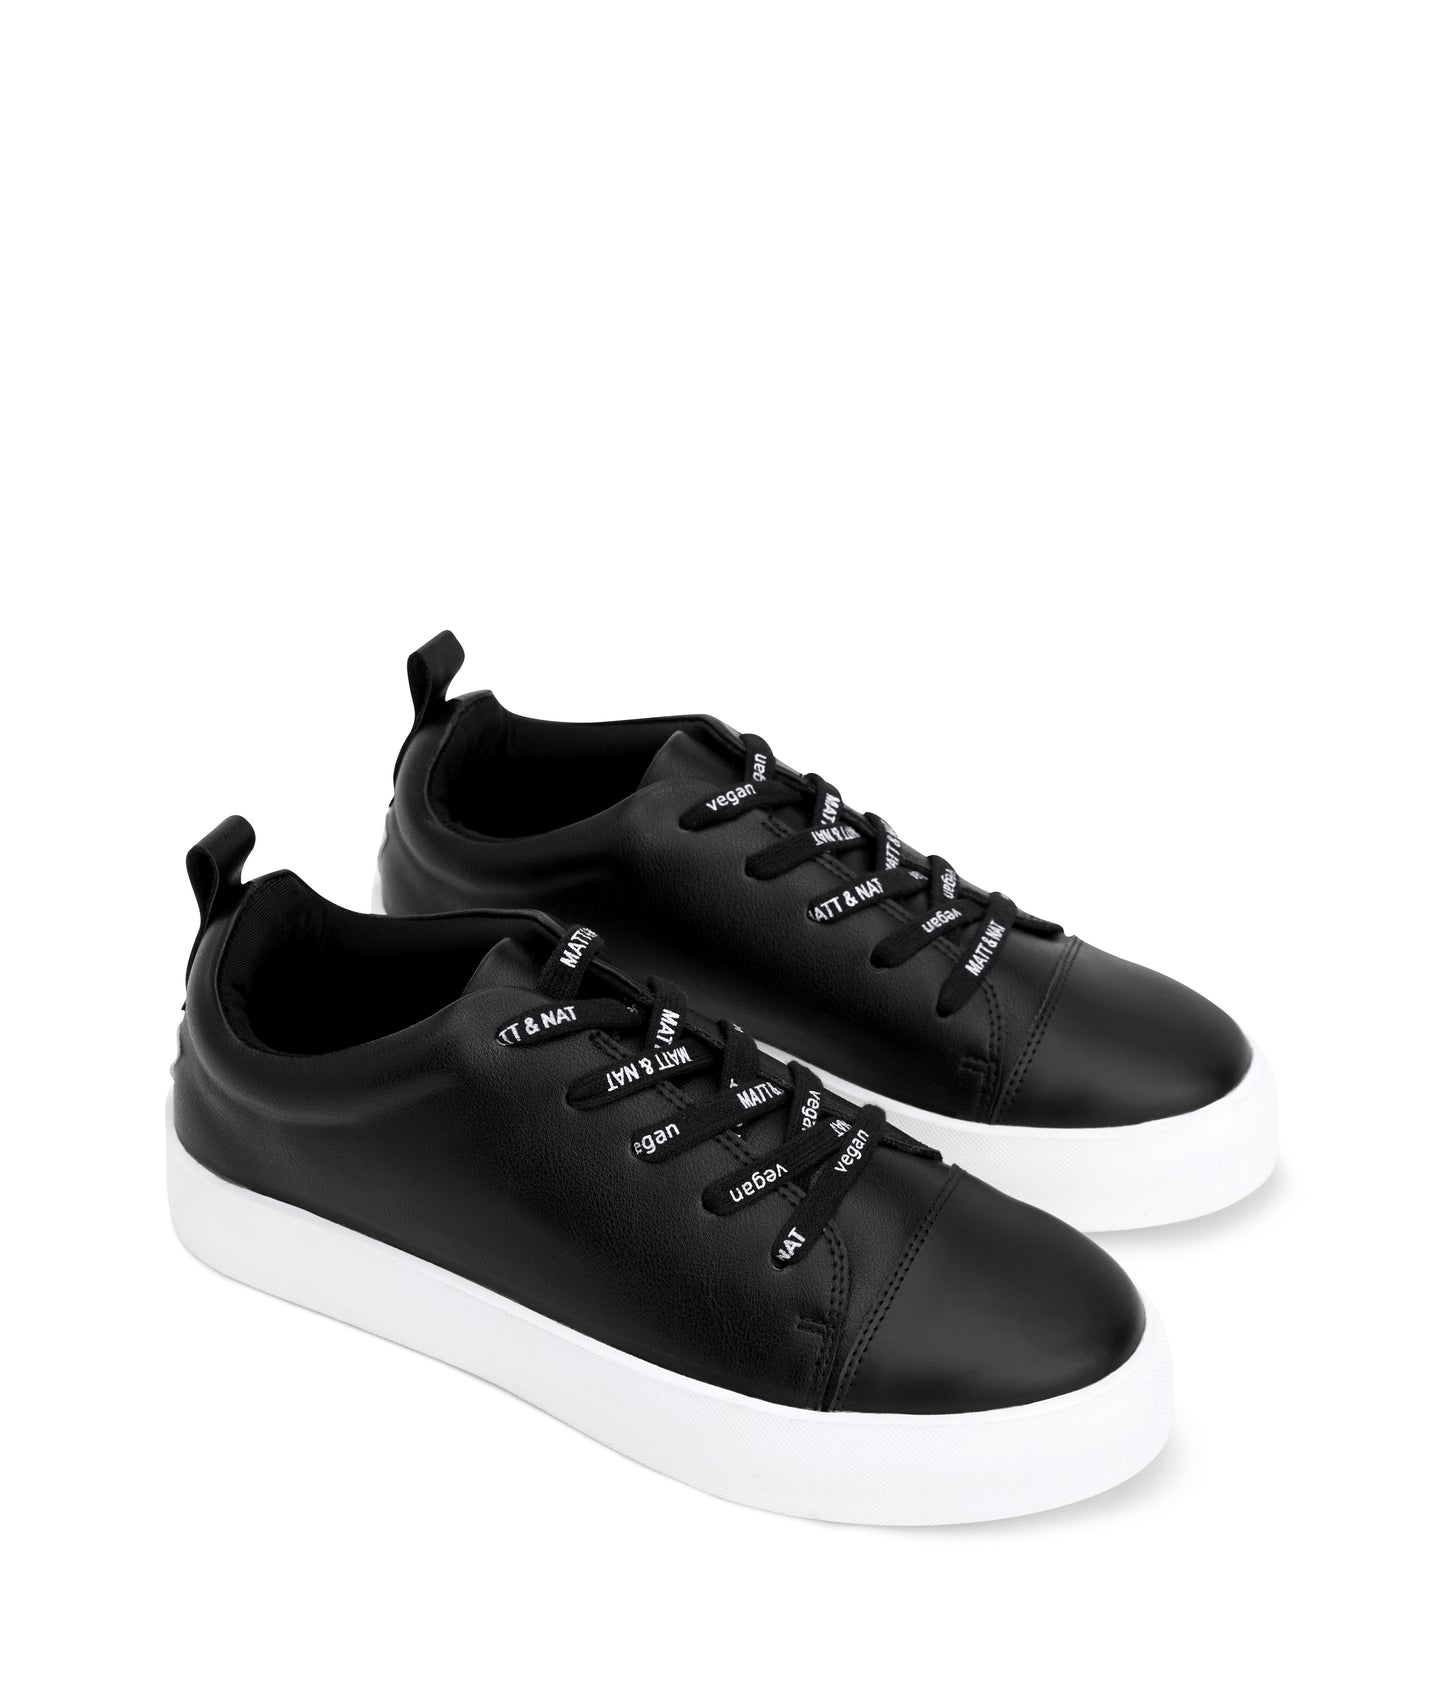 variant::noir -- marci shoe noir